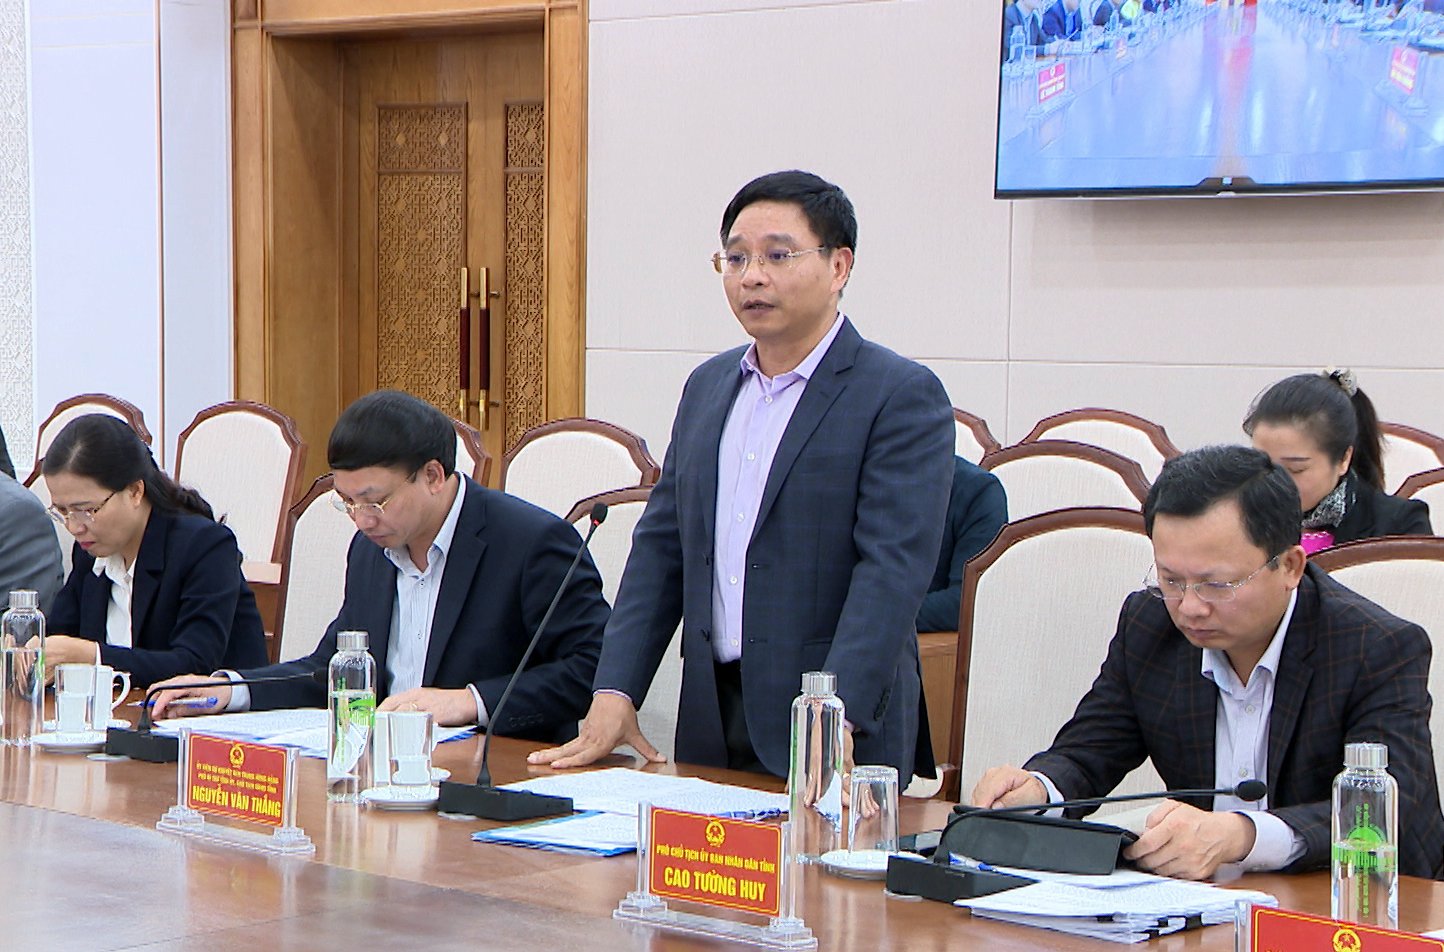 Chủ tịch UBND tỉnh Nguyễn Văn Thắng báo cáo với đoàn những nét nổi bật trong tình hình phát triển kinh tế - xã hội của tỉnh Quảng Ninh.